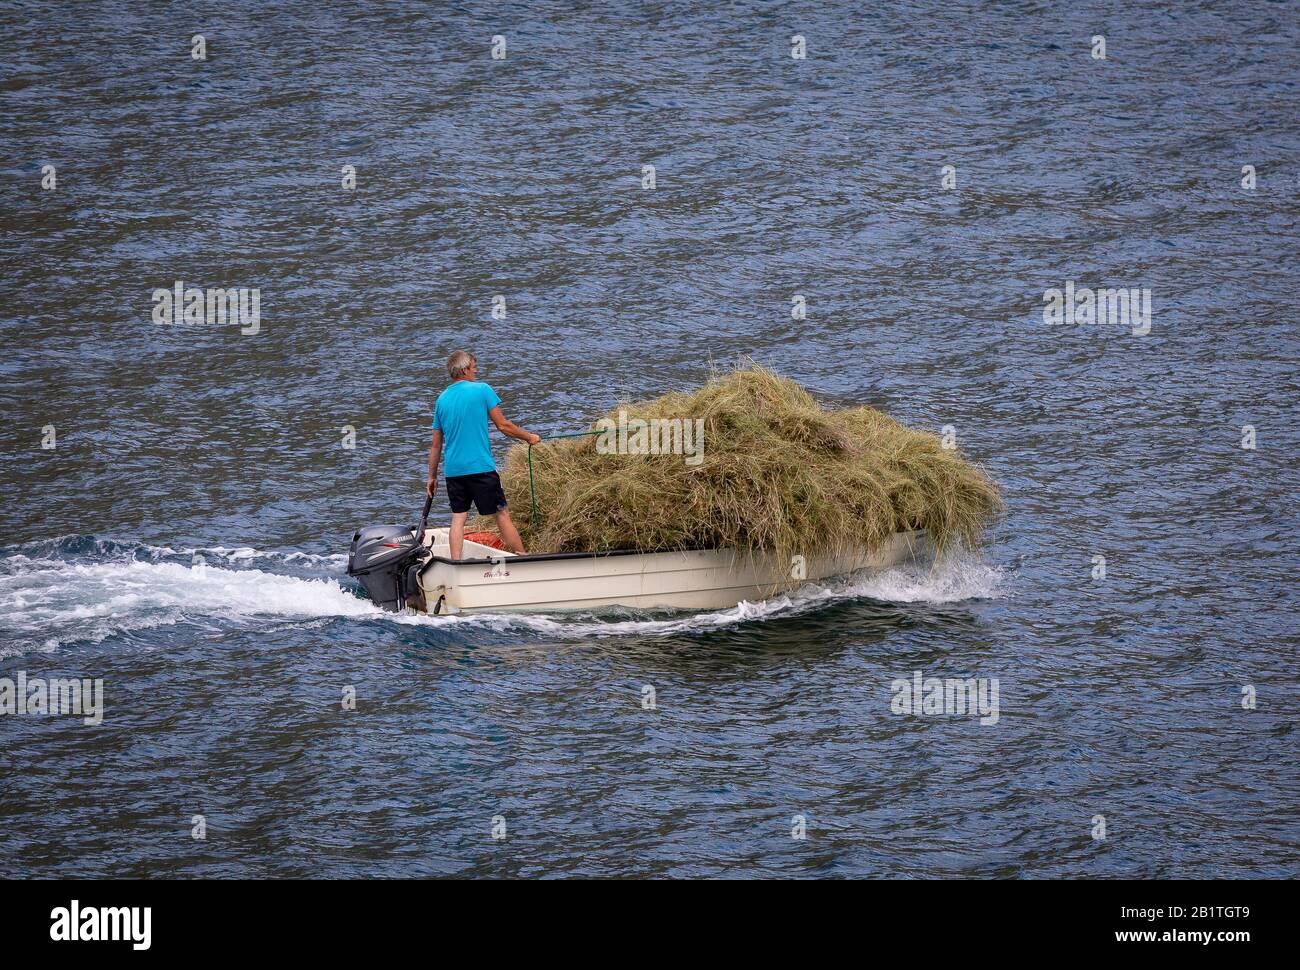 UNDREDAL, NORVÈGE - petit bateau de retour avec récolte de foin, sur Aulandsfjorden, un fjord dans le comté de Vestland. Banque D'Images